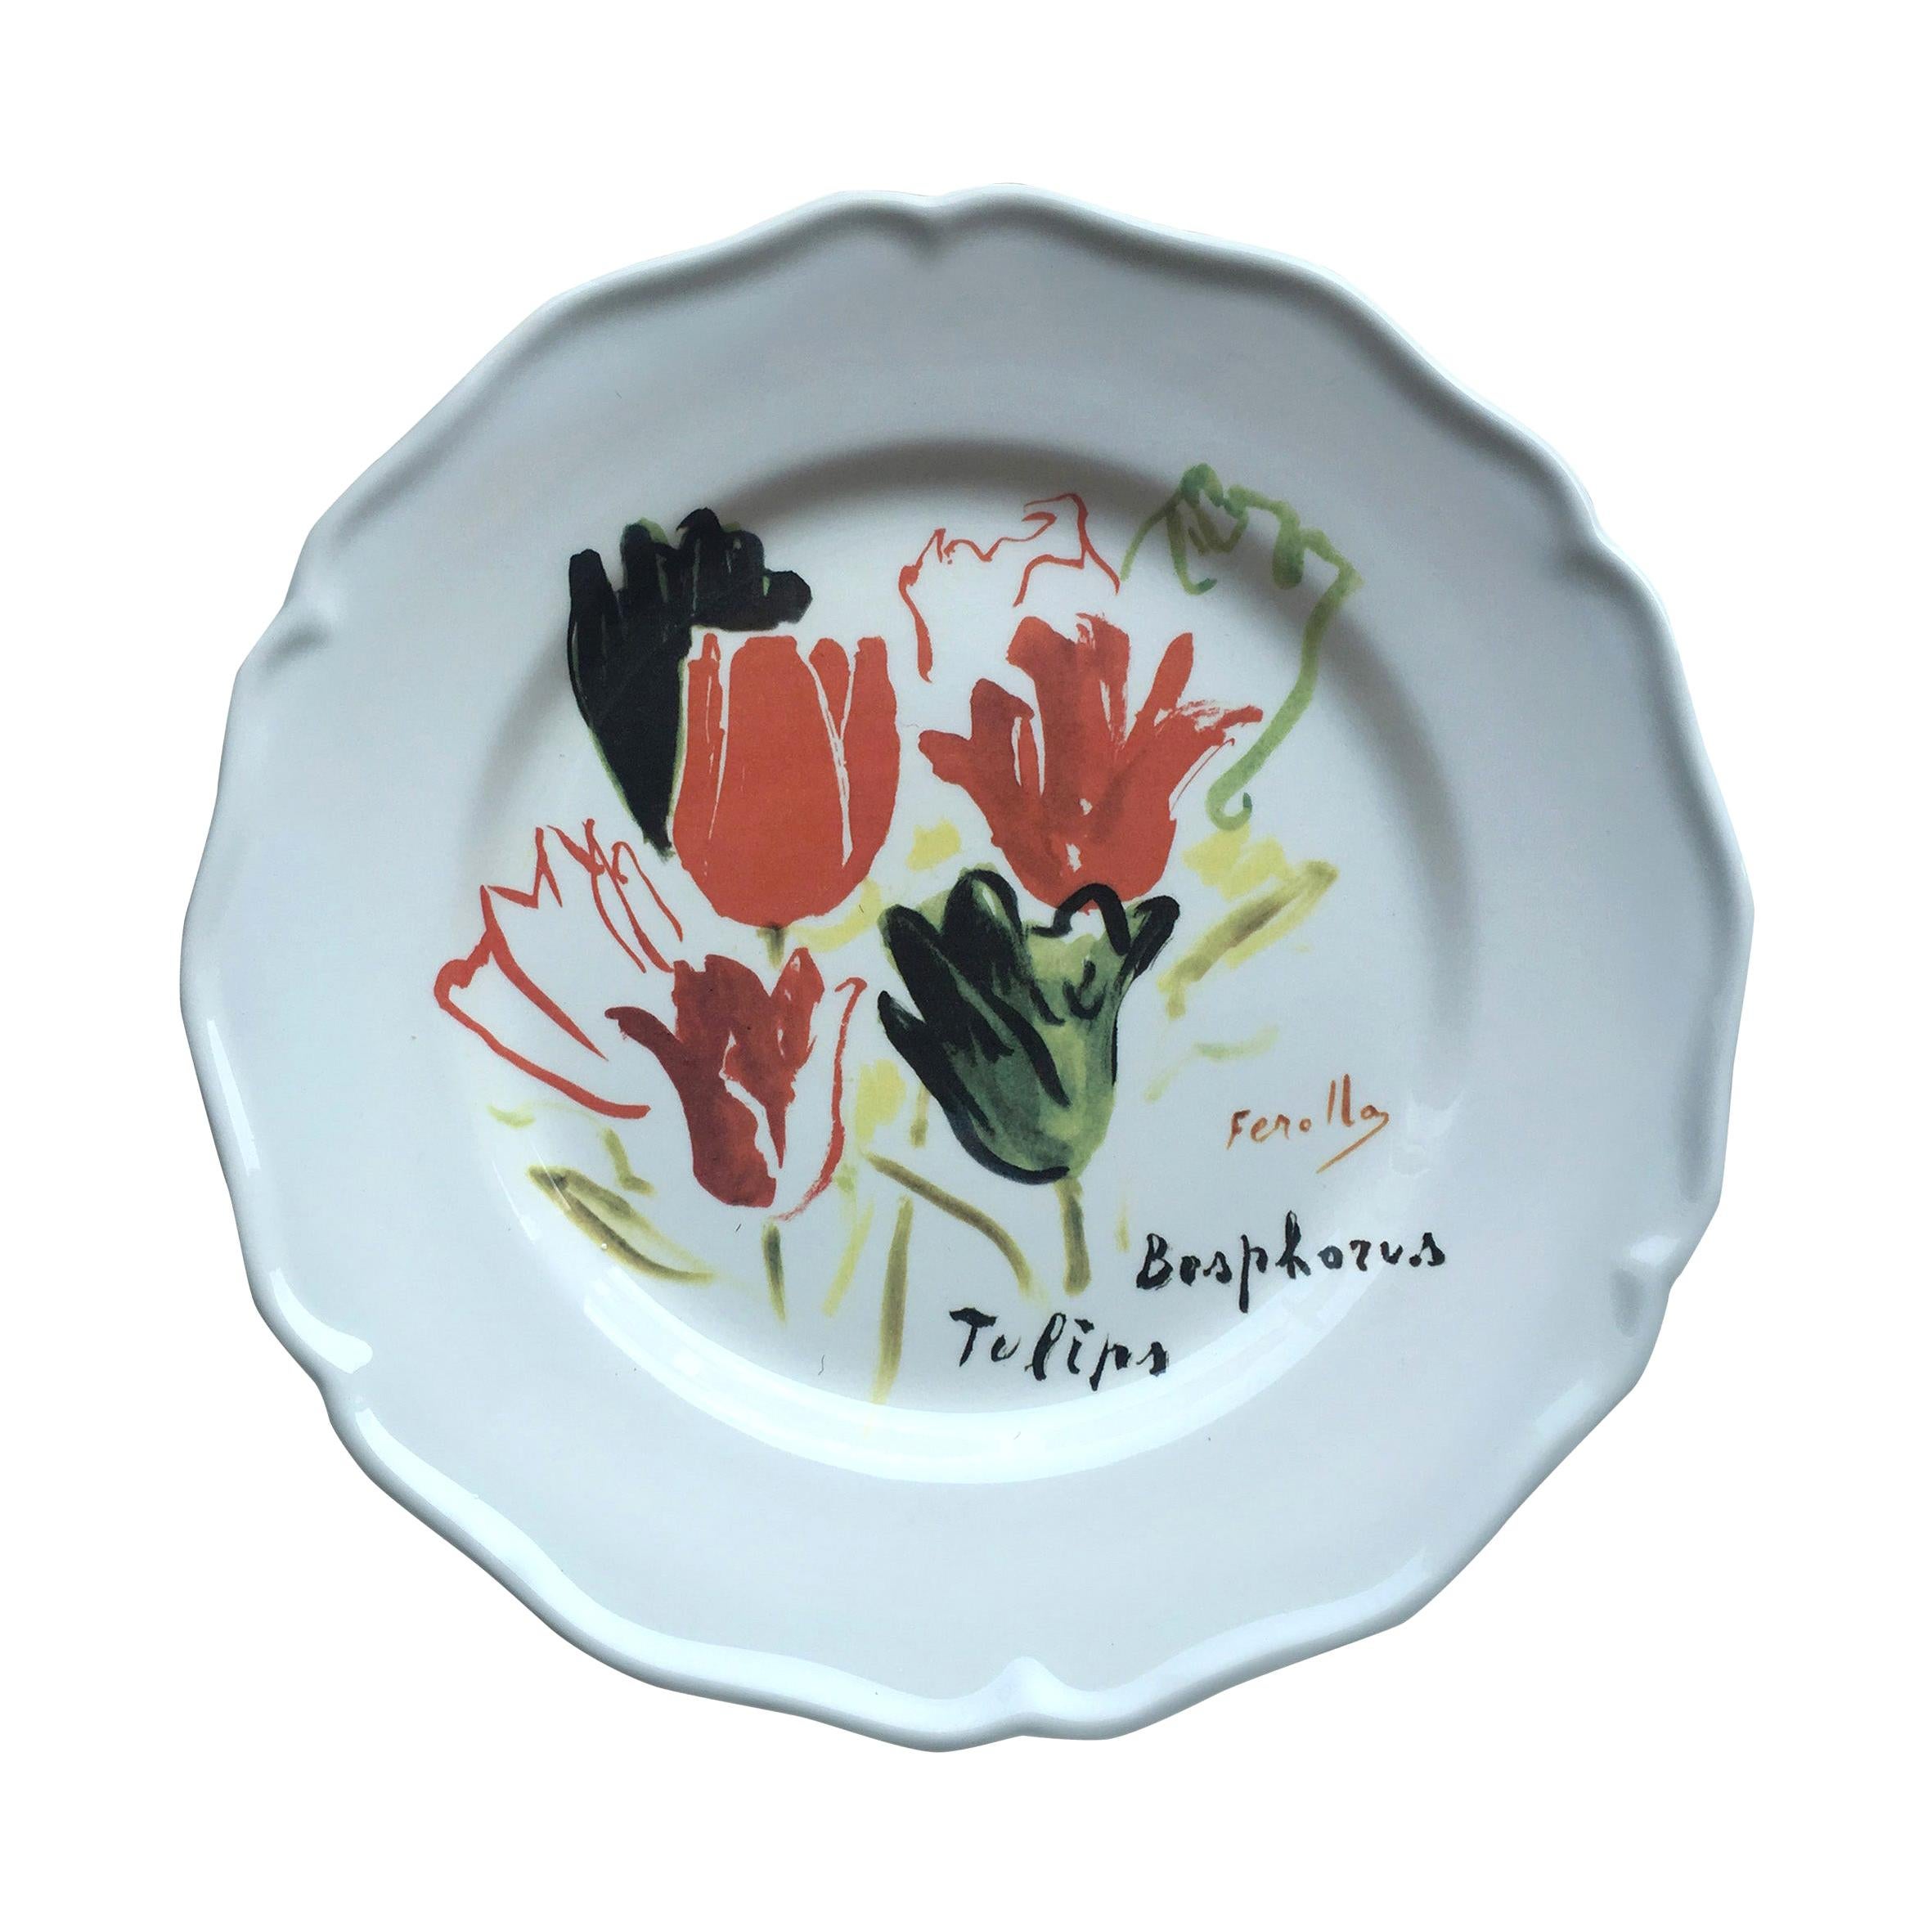 Les Ottomans Bosphorus Suite 'Tulips' Design Plate by Chez Dede